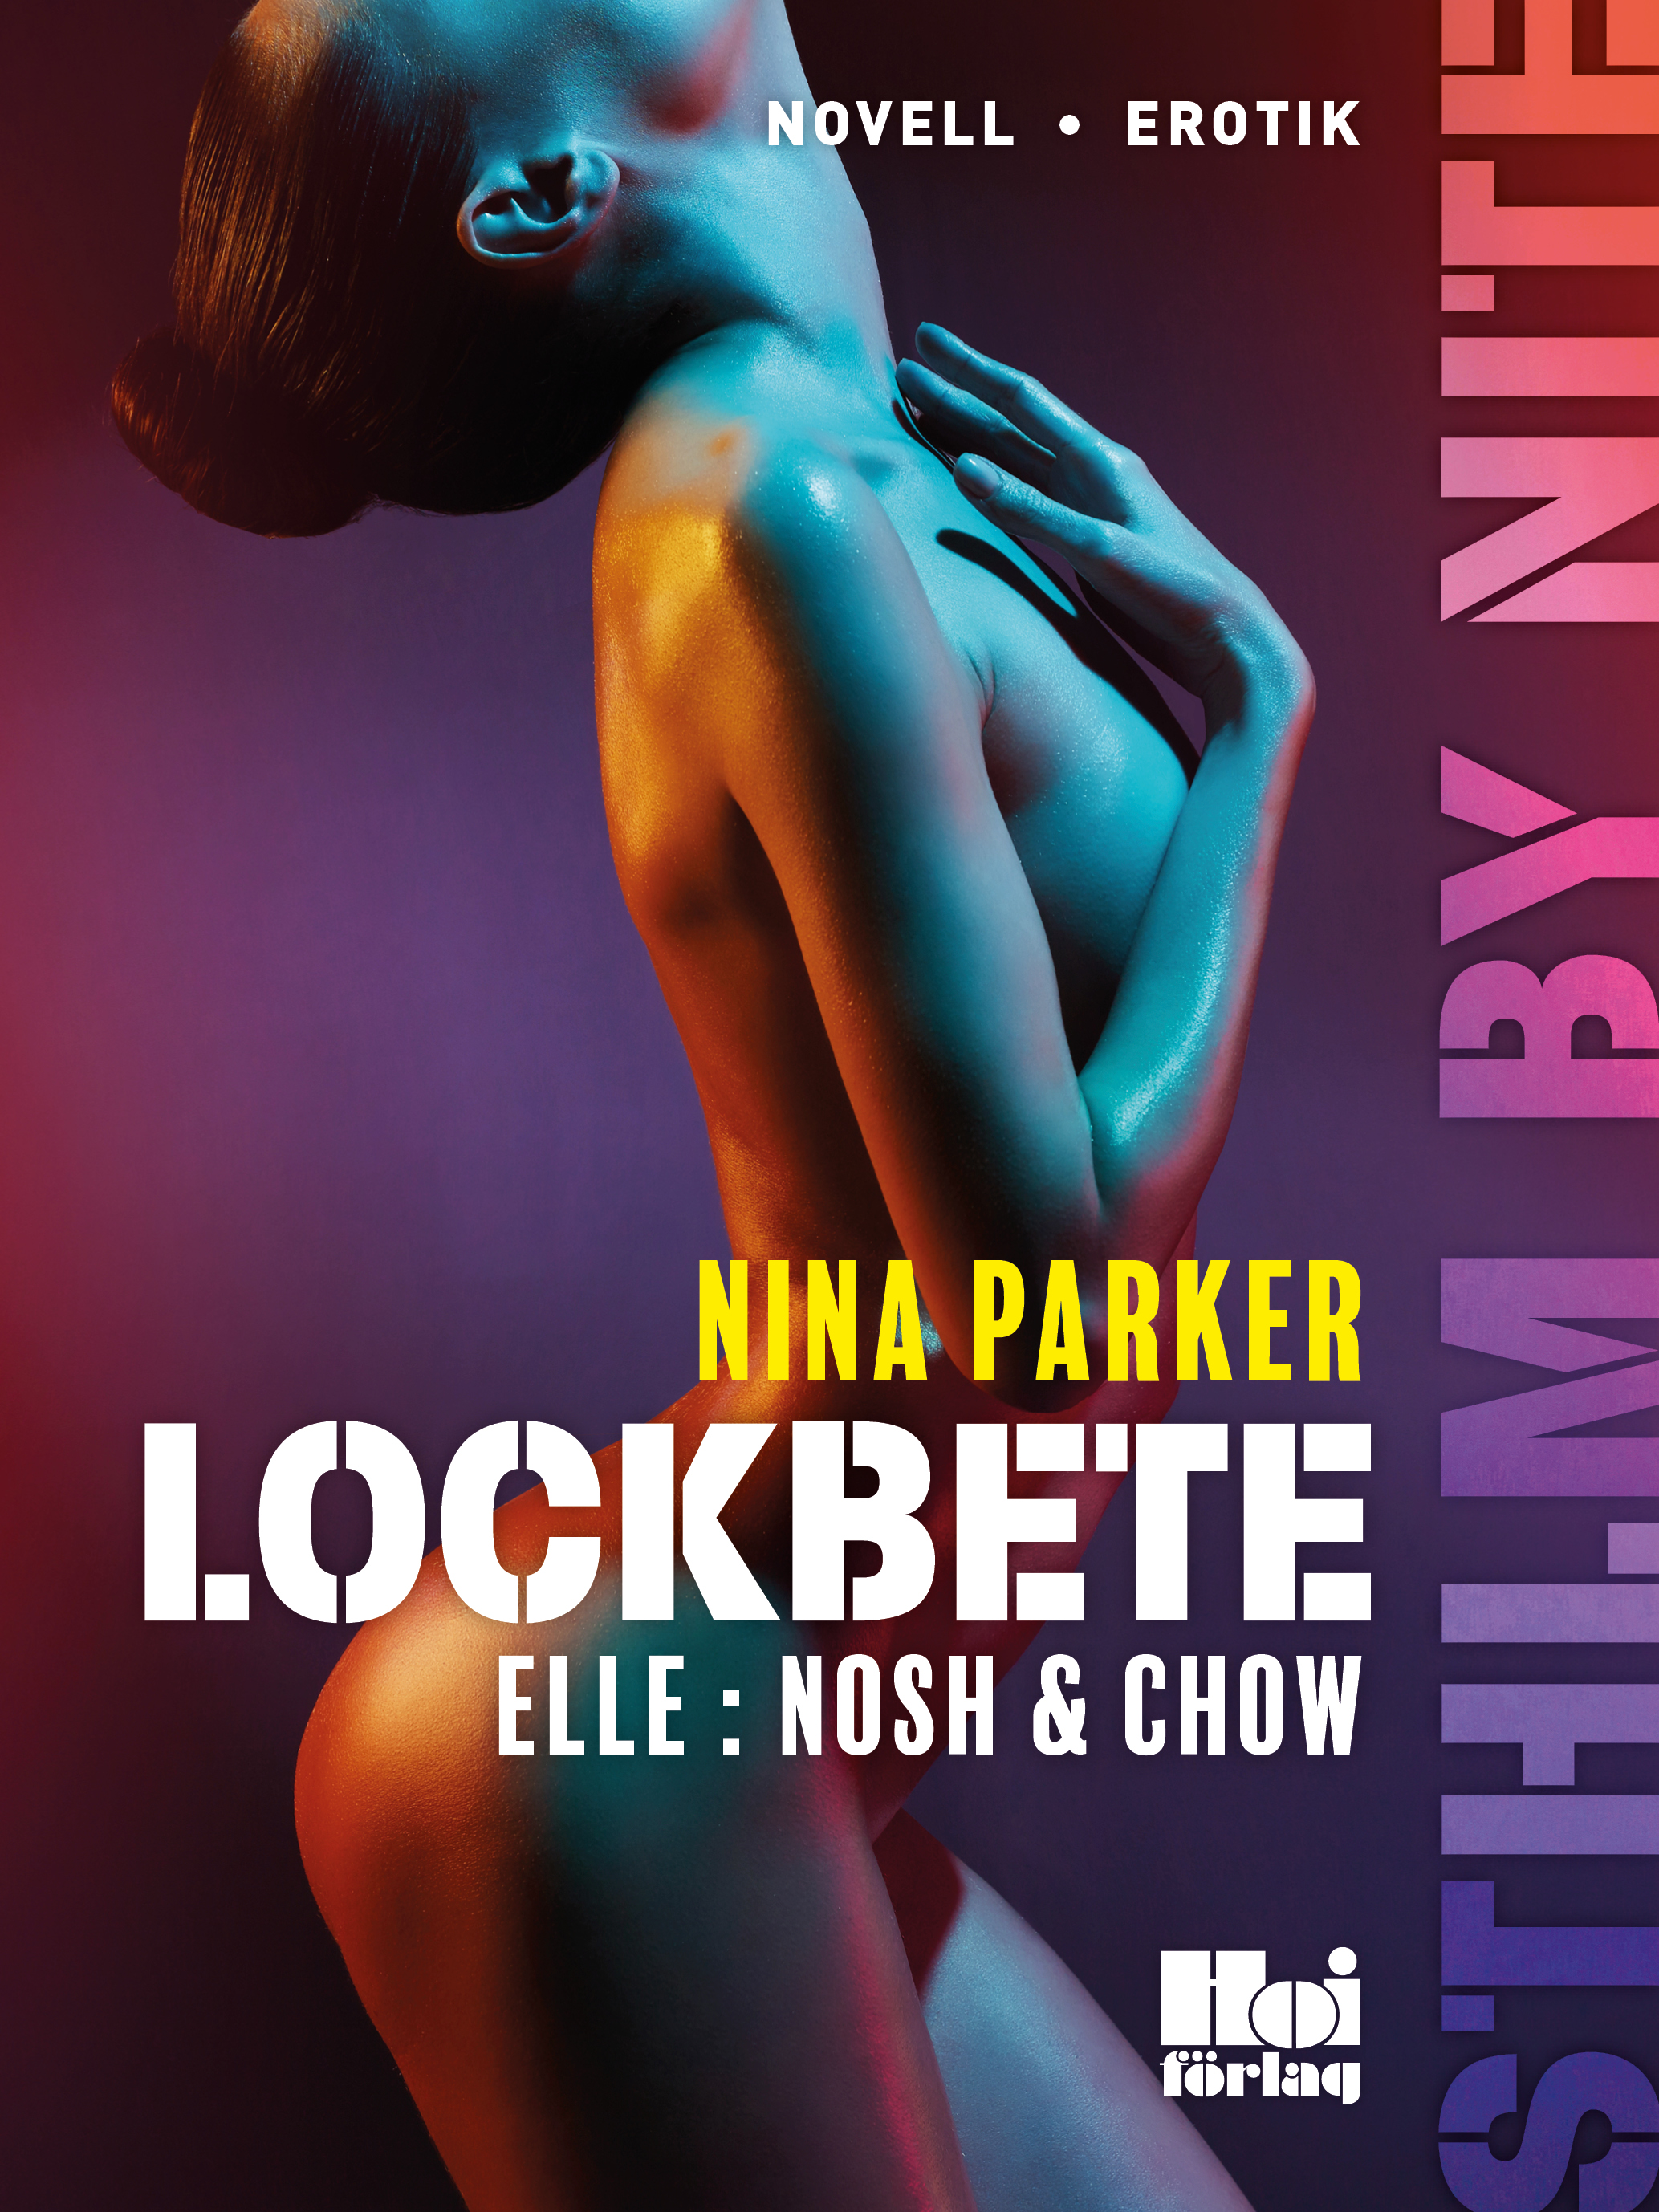 Lockbete - Elle : Nosh & Chow